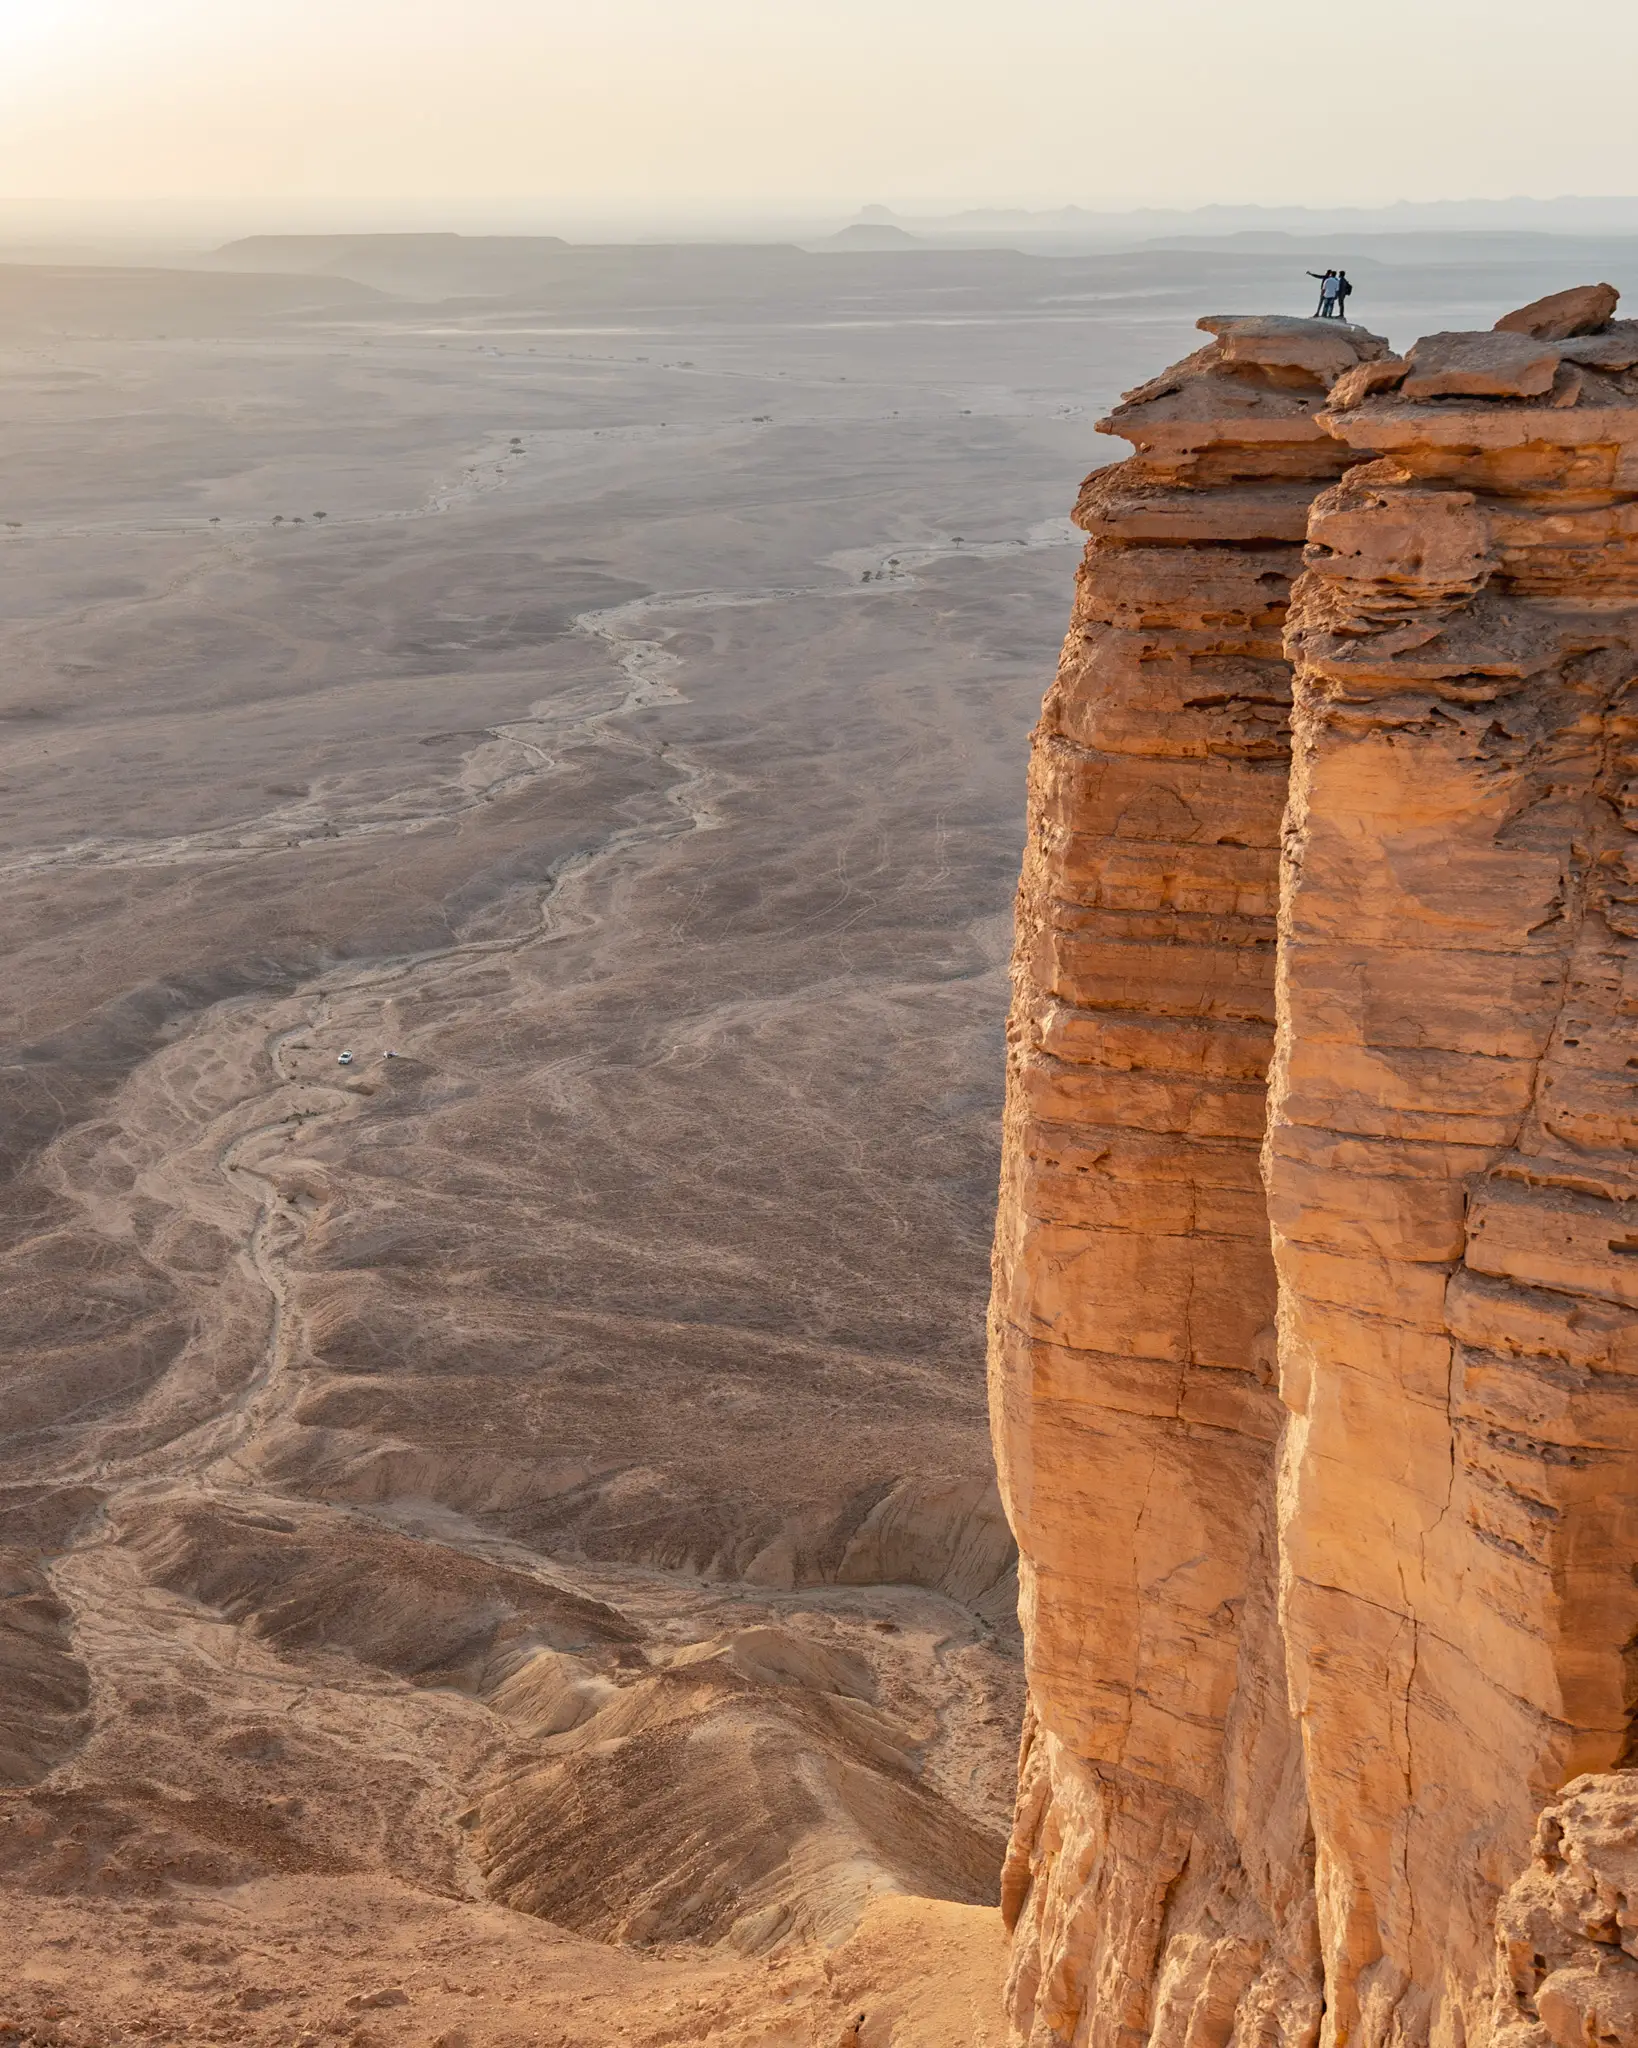 Epic views at the Edge of the World near Riyadh